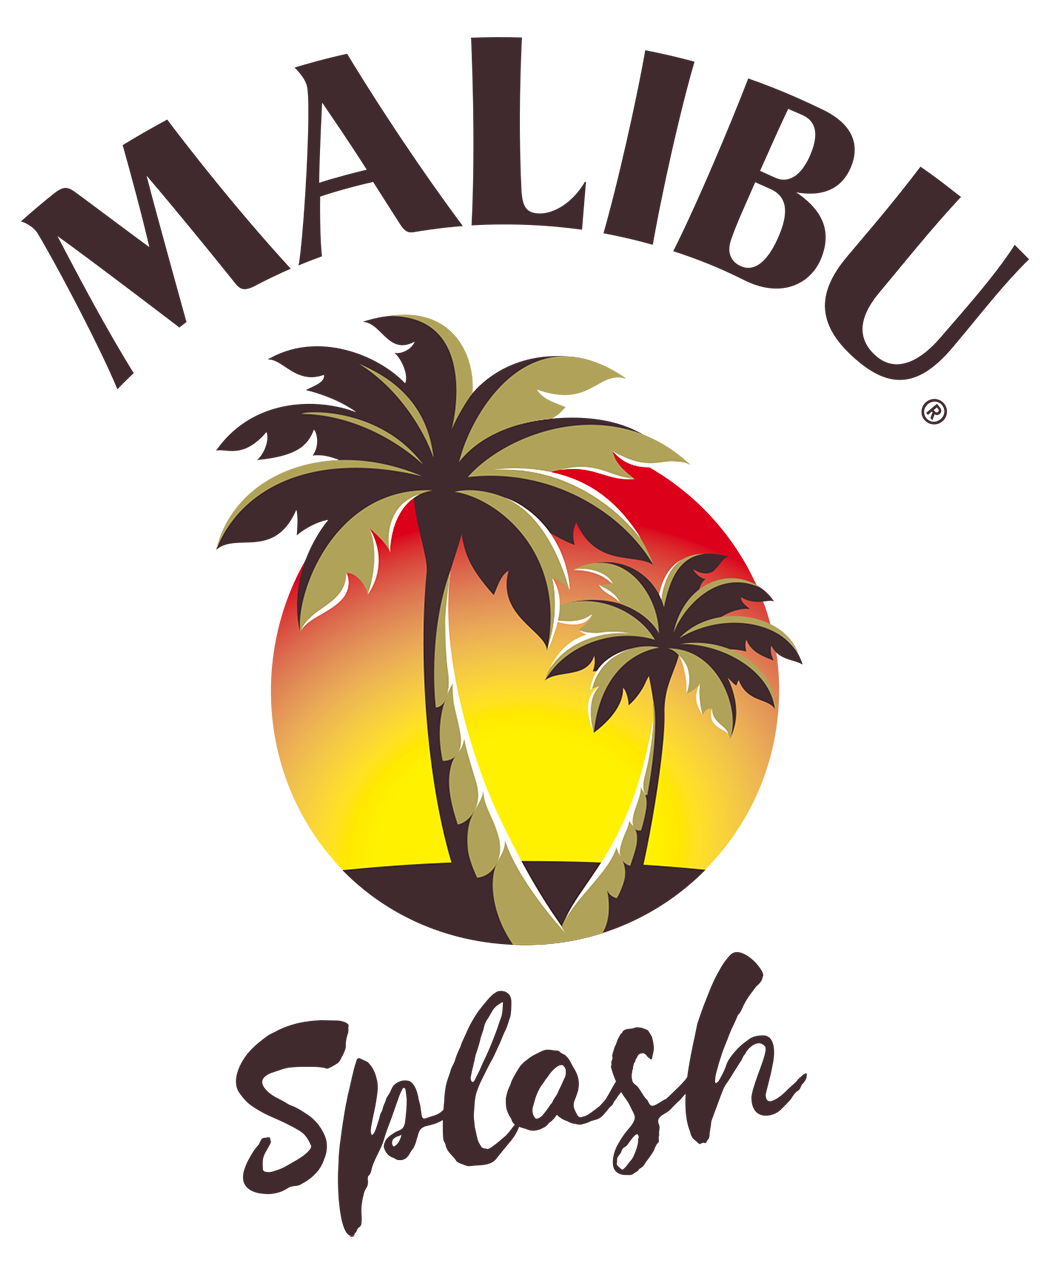 Malibu Splash